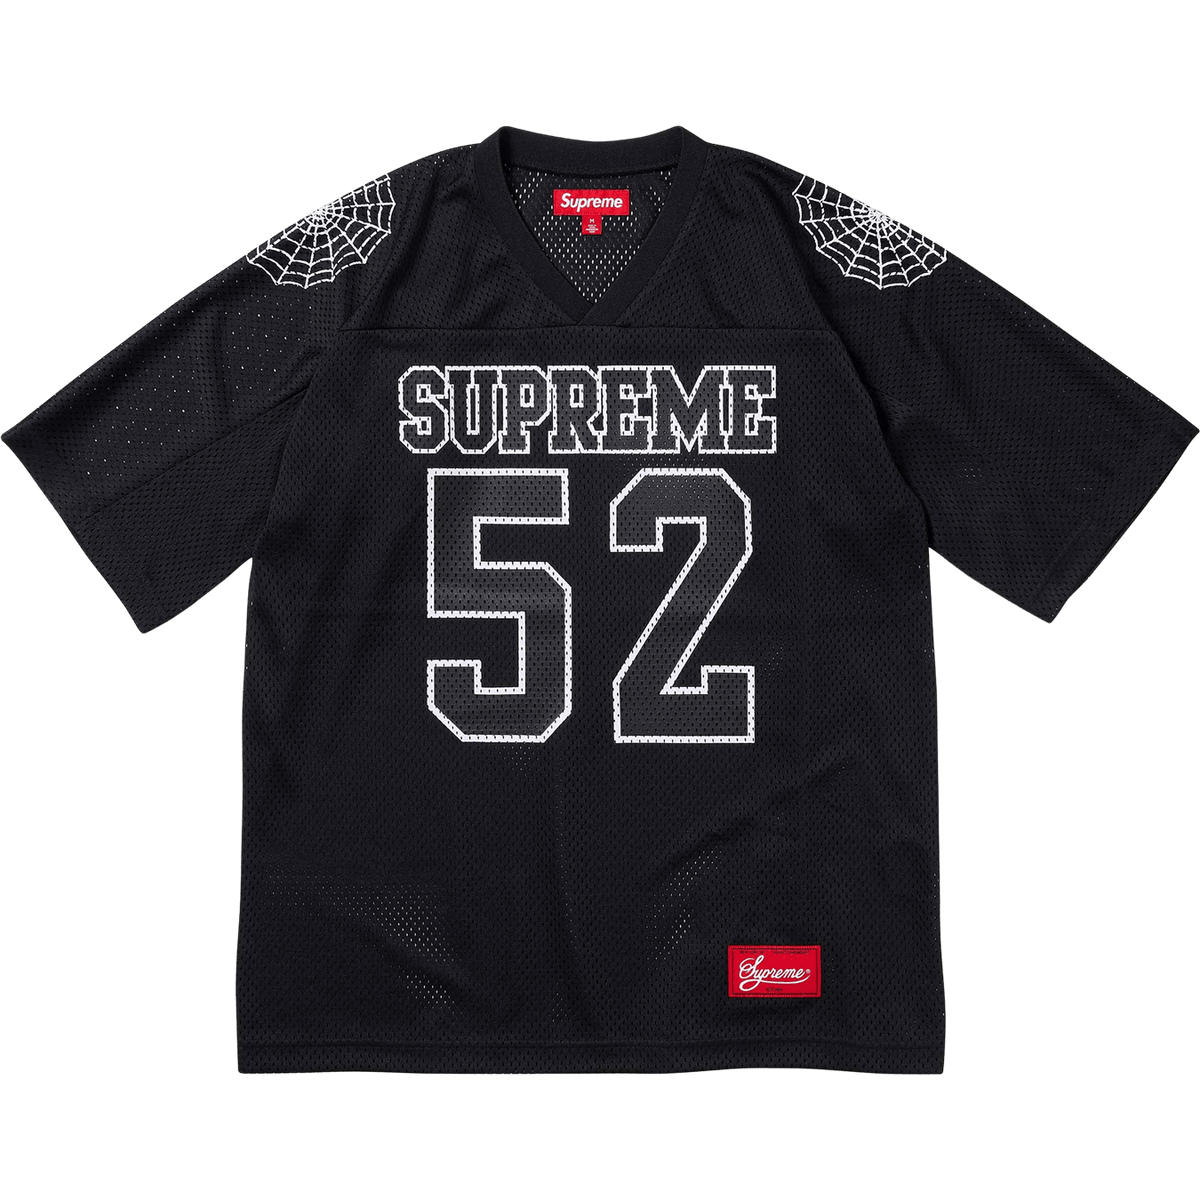 Supreme Spiderweb Football Jersey 'Black' - JuzsportsShops